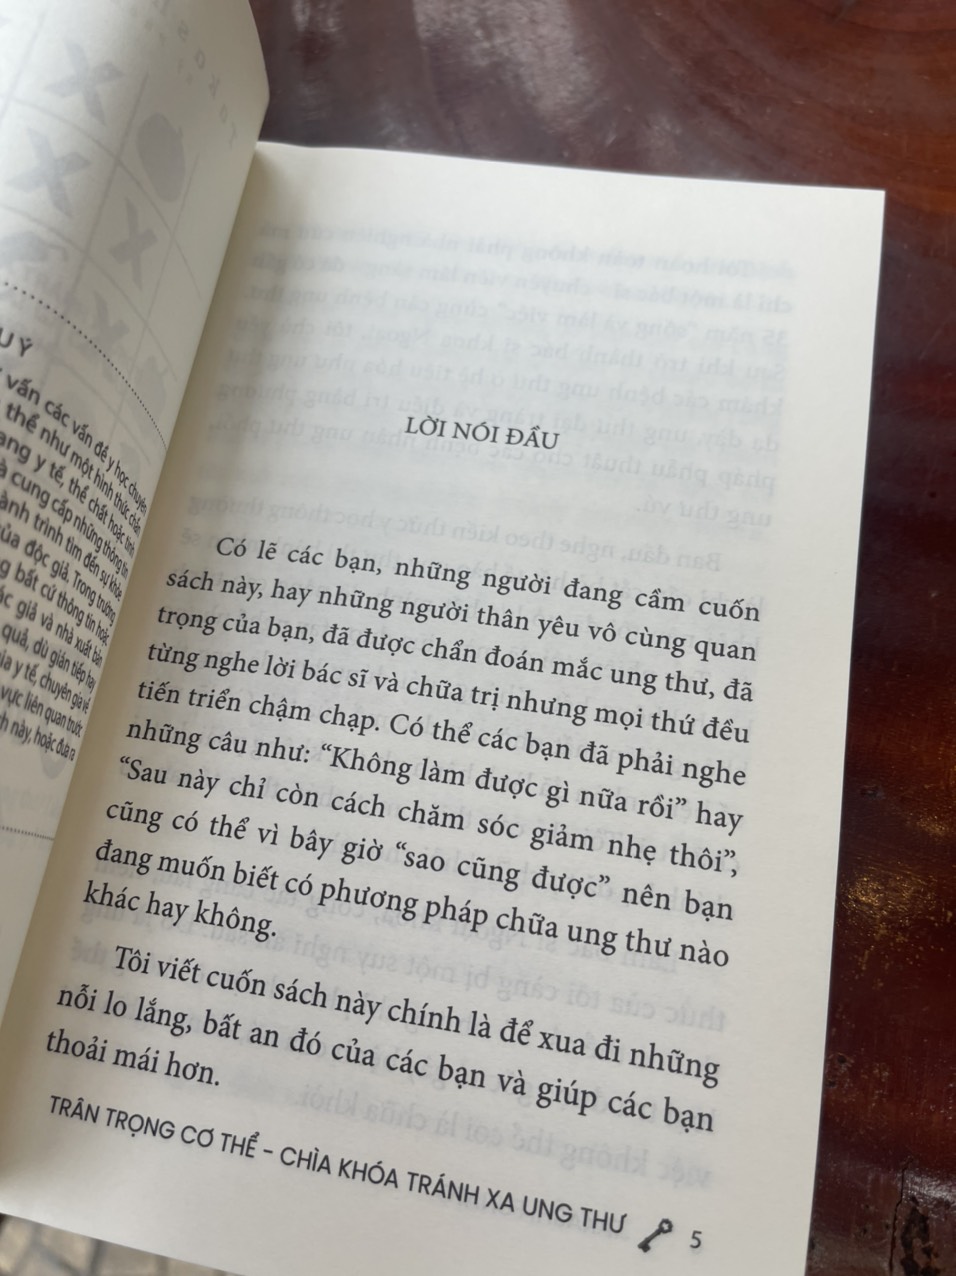 TRÂN TRỌNG CƠ THỂ - Chìa khóa tránh xa ung thư – Takashi Funato – Kỳ Phong dịch – Huy Hoàng Books – NXB Thanh Niên (bìa mềm)